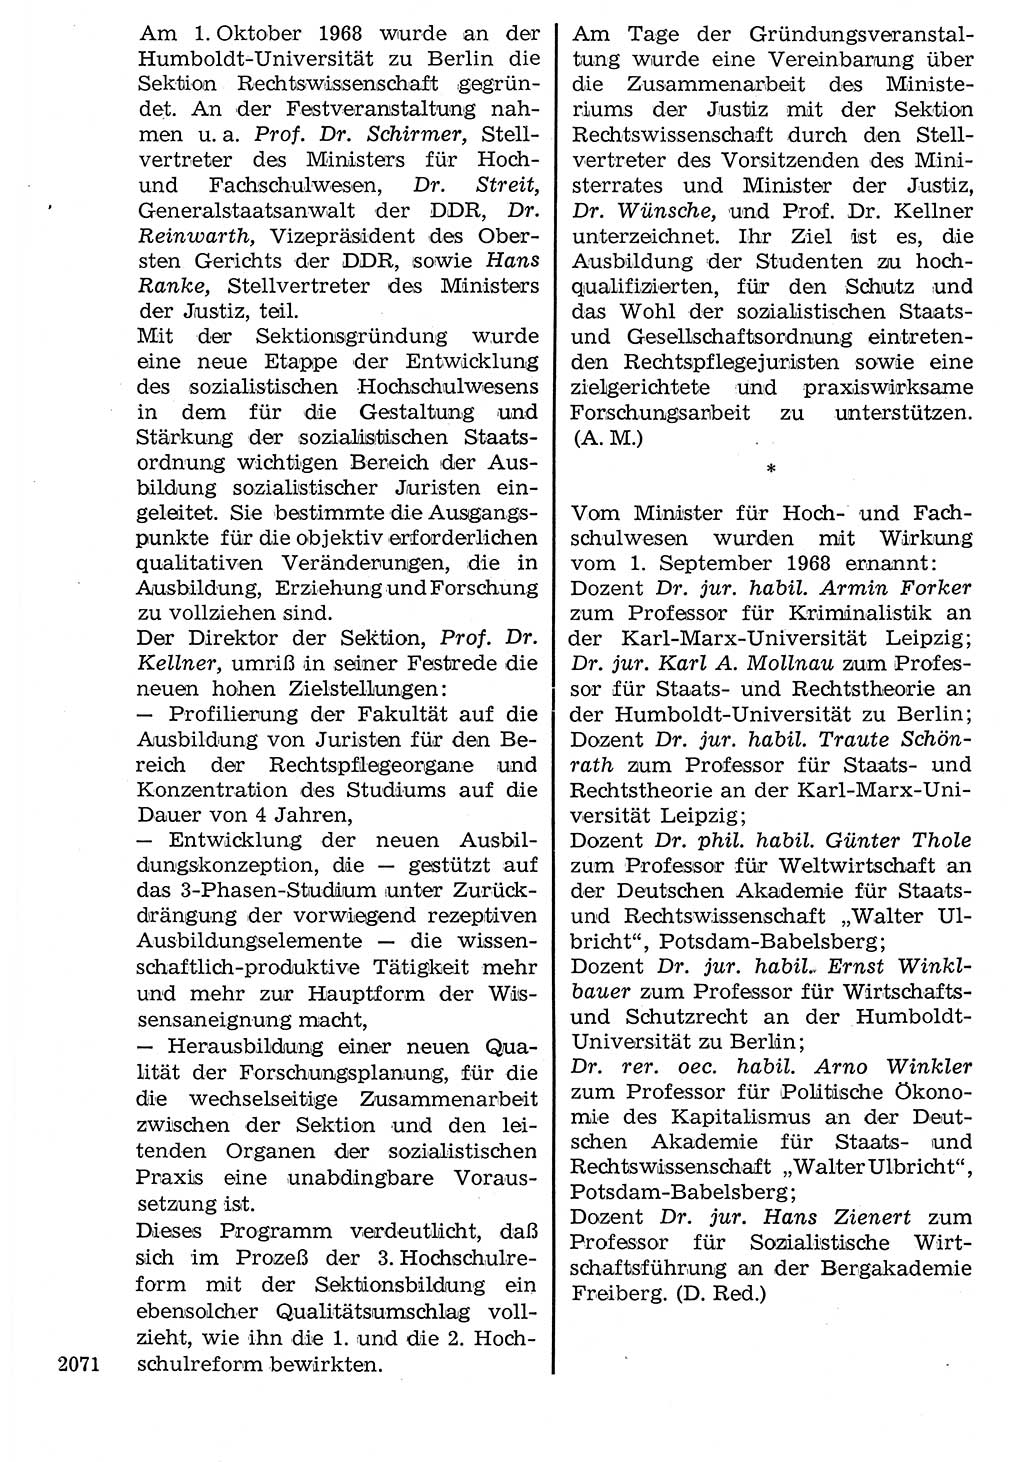 Staat und Recht (StuR), 17. Jahrgang [Deutsche Demokratische Republik (DDR)] 1968, Seite 2071 (StuR DDR 1968, S. 2071)